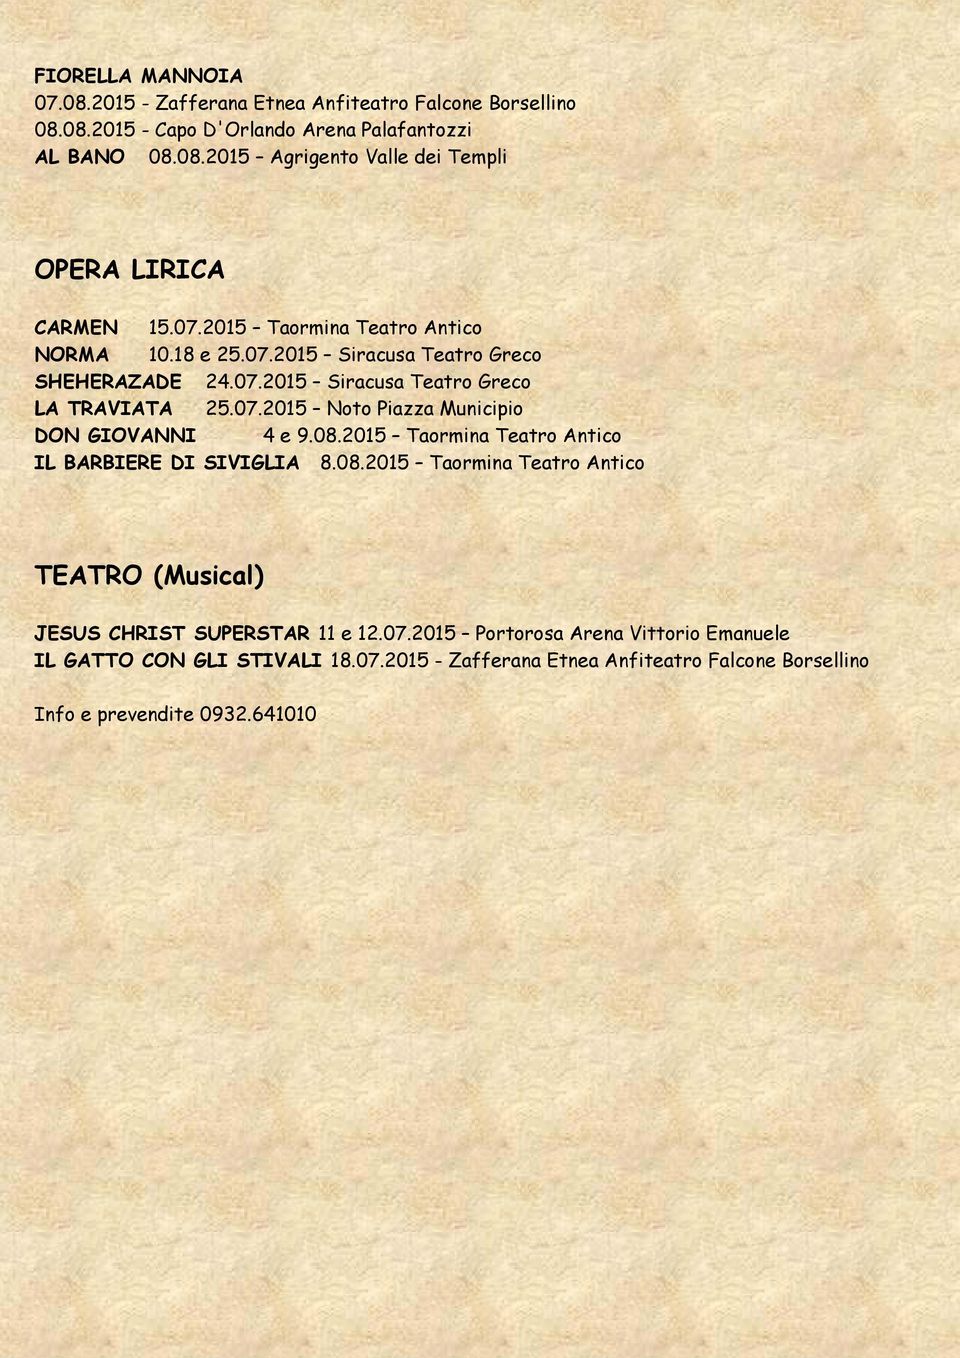 08.2015 Taormina Teatro Antico IL BARBIERE DI SIVIGLIA 8.08.2015 Taormina Teatro Antico TEATRO (Musical) JESUS CHRIST SUPERSTAR 11 e 12.07.